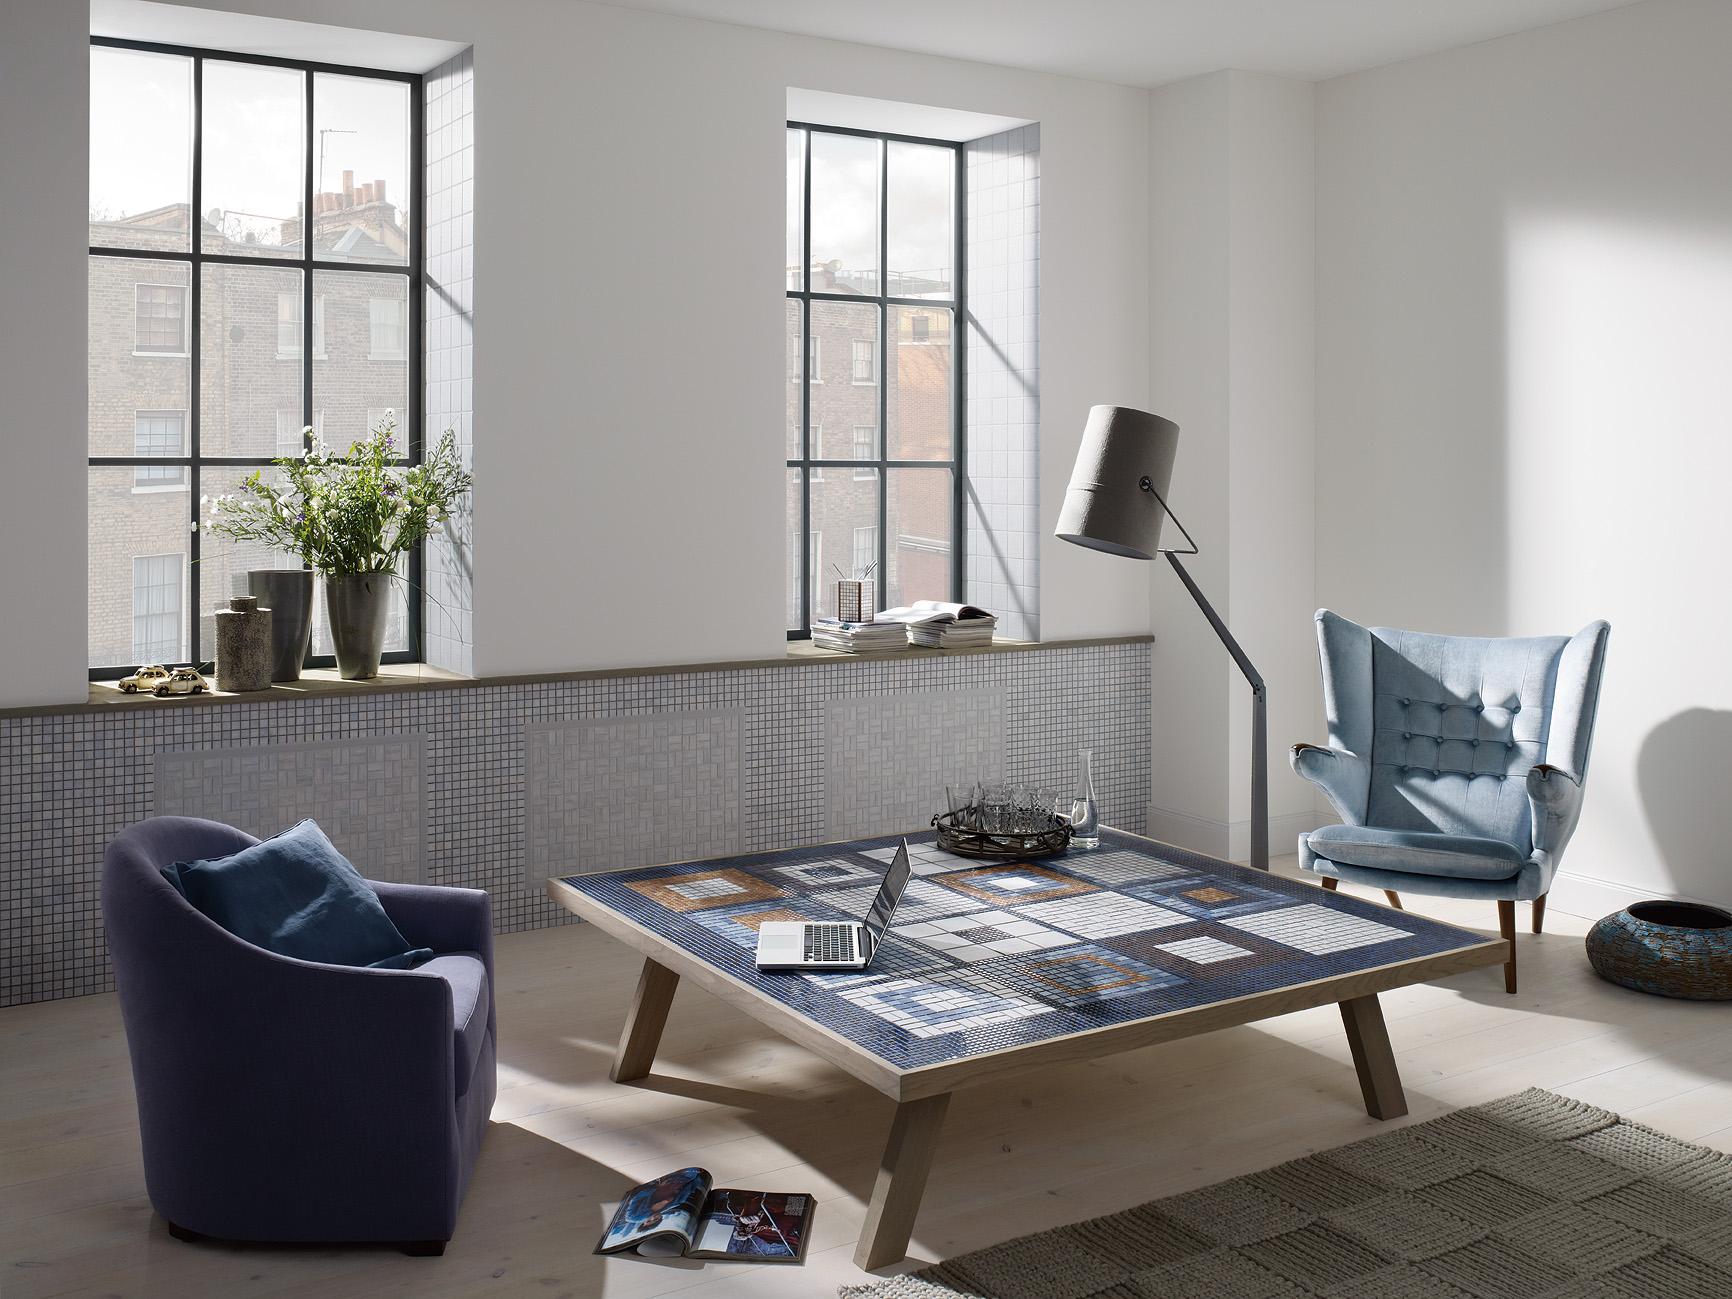 Blautöne für eine gemütliche Atmosphäre im Wohnzimmer #fliesen #mosaikfliesen #sessel #stehlampe #ohrensessel #tisch ©Jasba Mosaik GmbH